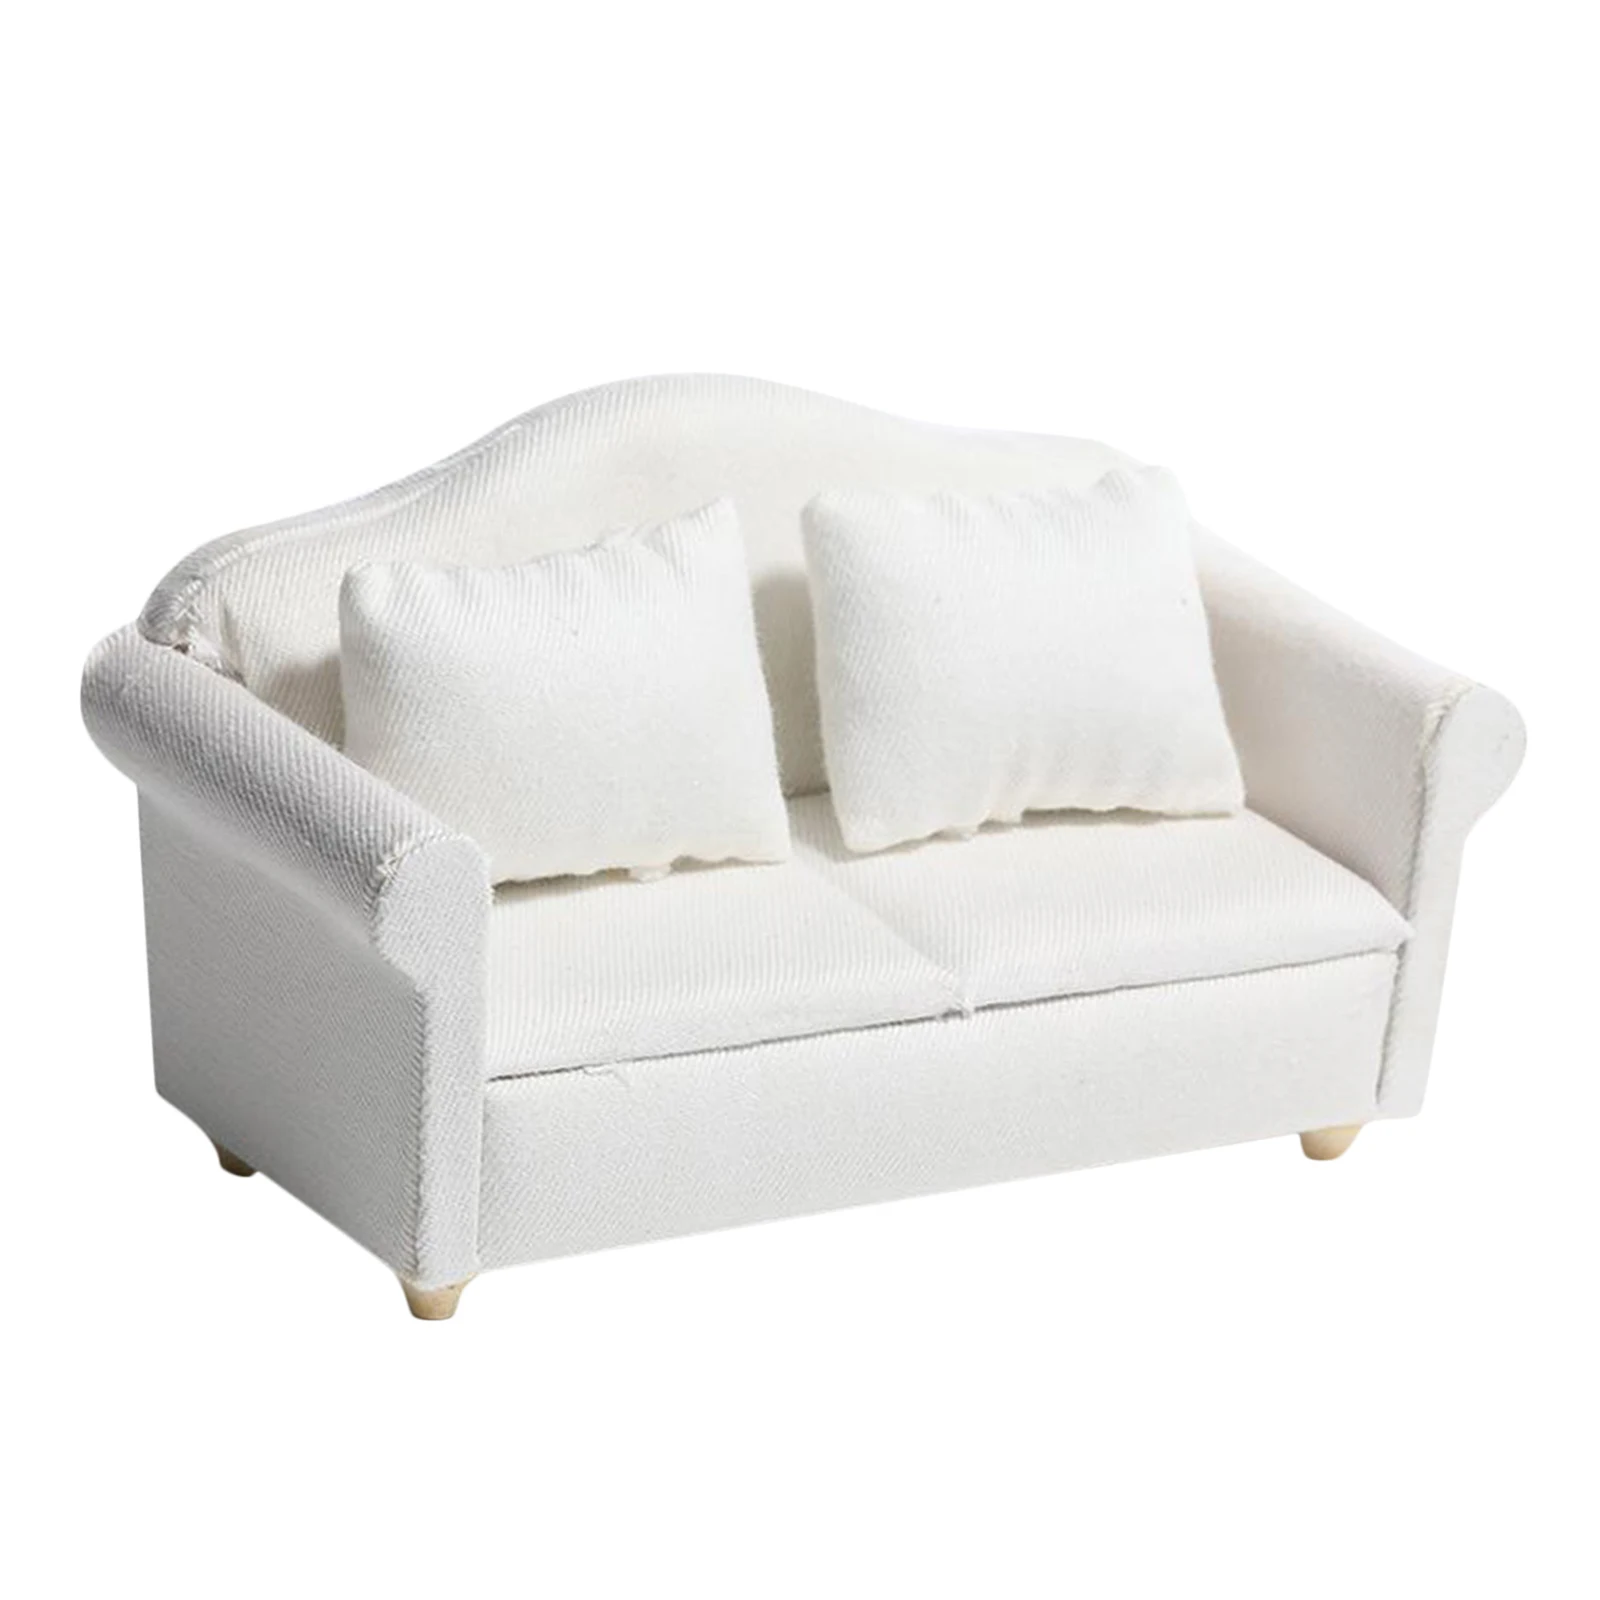 Миниатюрный деревянный диван чистого белого цвета в масштабе 1:12 для кукольного